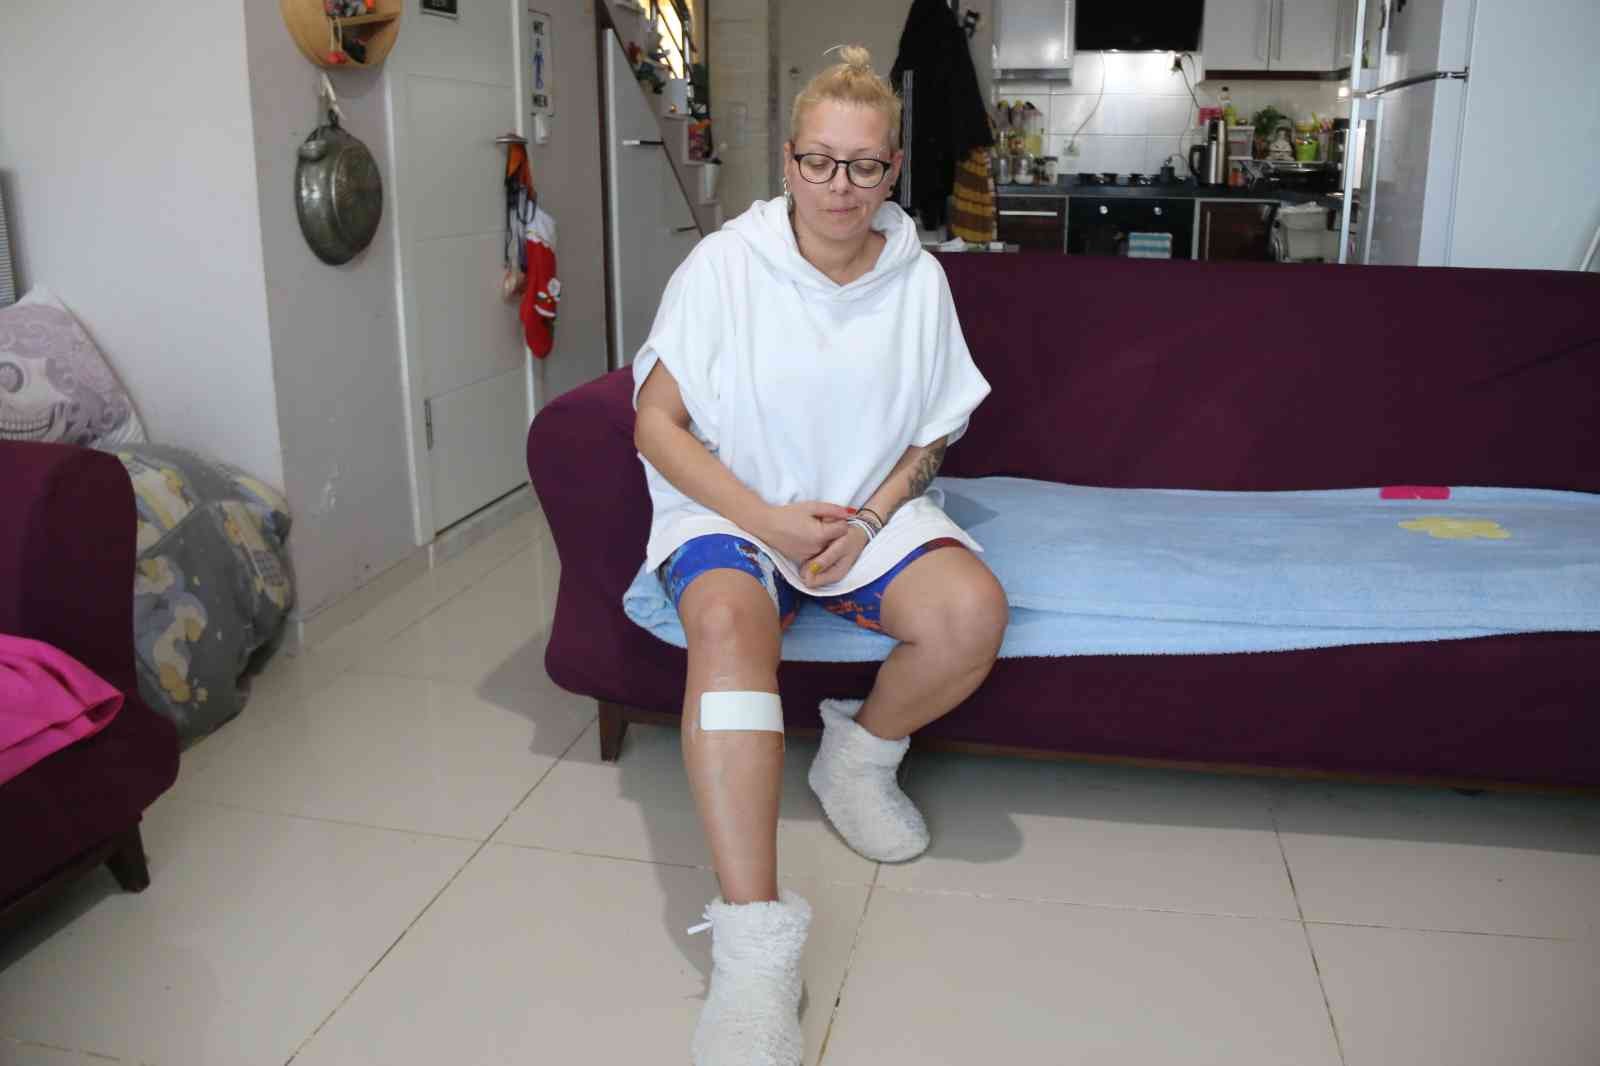 Antalya’da sokak köpeği tarafından ısırılan aşçı kadın kabusu yaşadı #antalya